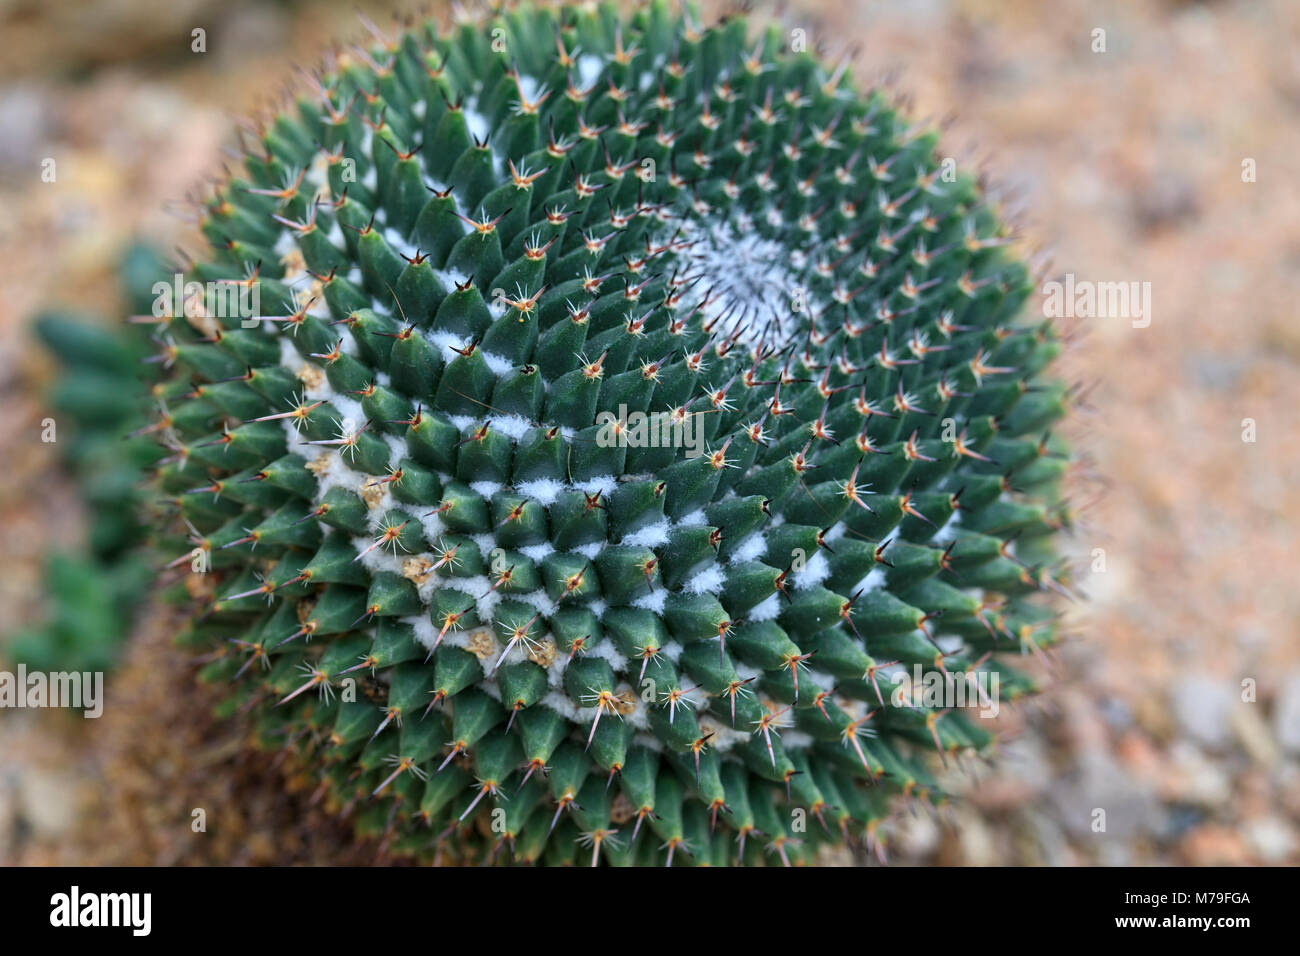 Sheldon's Pincushion (Mammillaria sheldonii), une espèce de cactus originaire du Mexique. Banque D'Images